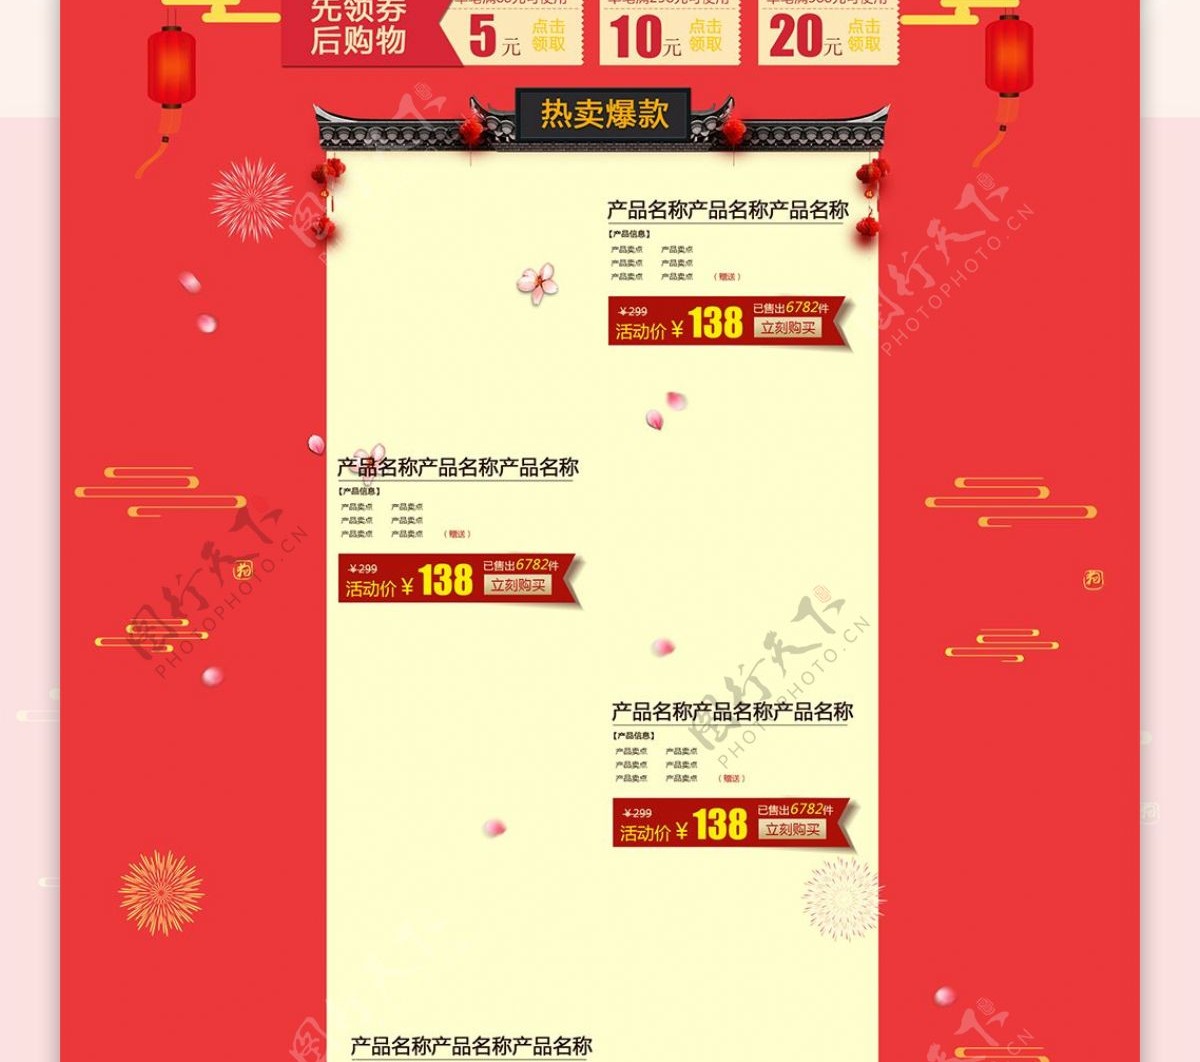 中国风电商促销春节不打烊休闲食品首页模版